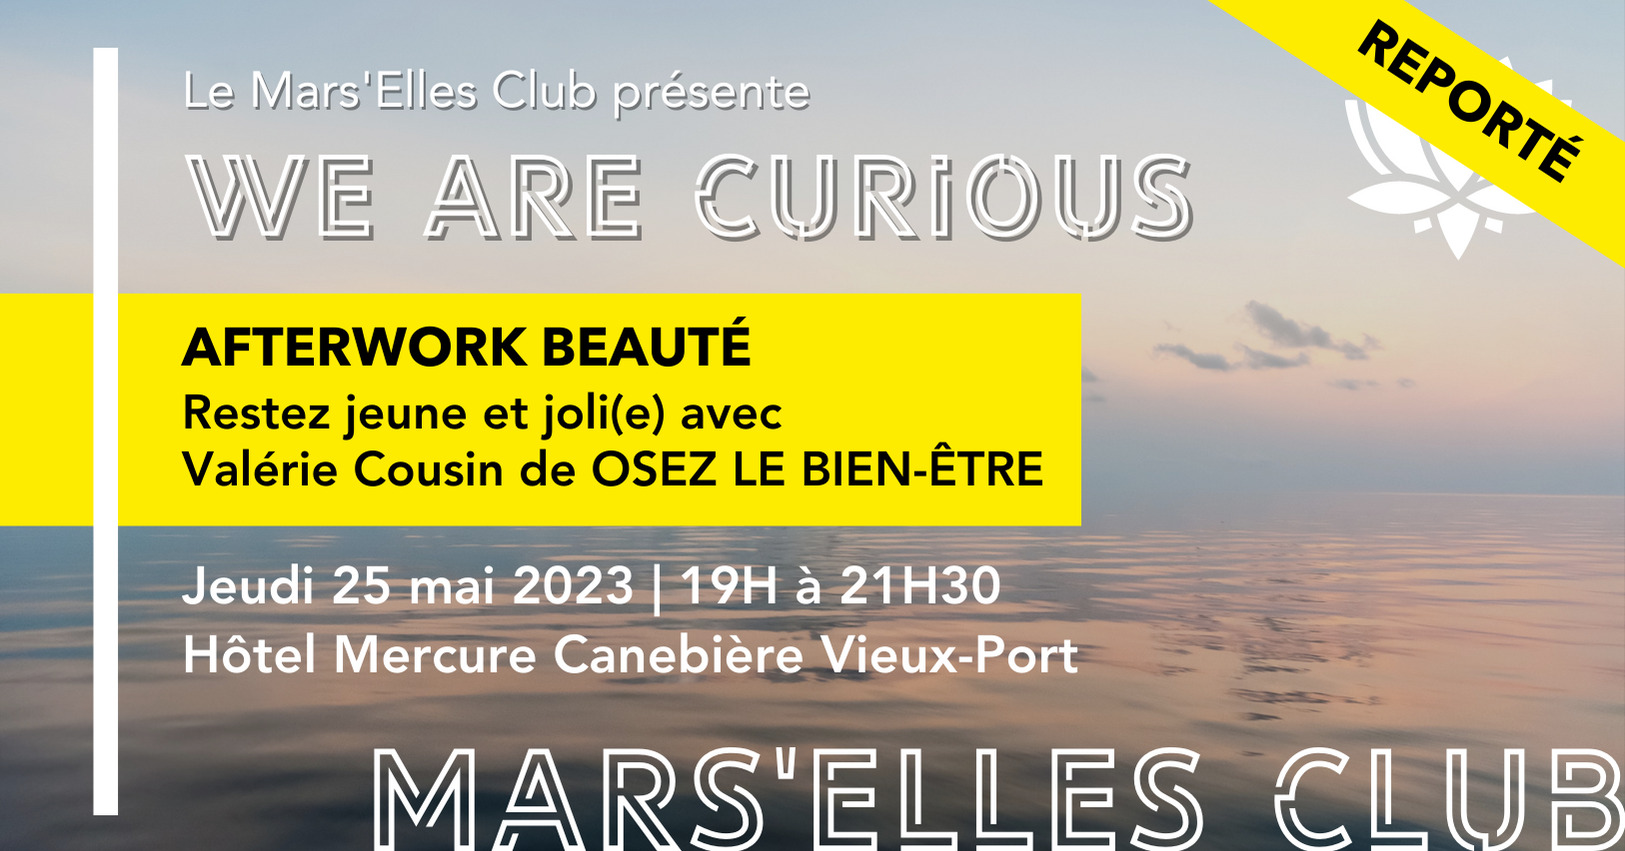 after-work-beaute-mars-elles-club-marseille-mai-2023-reporté